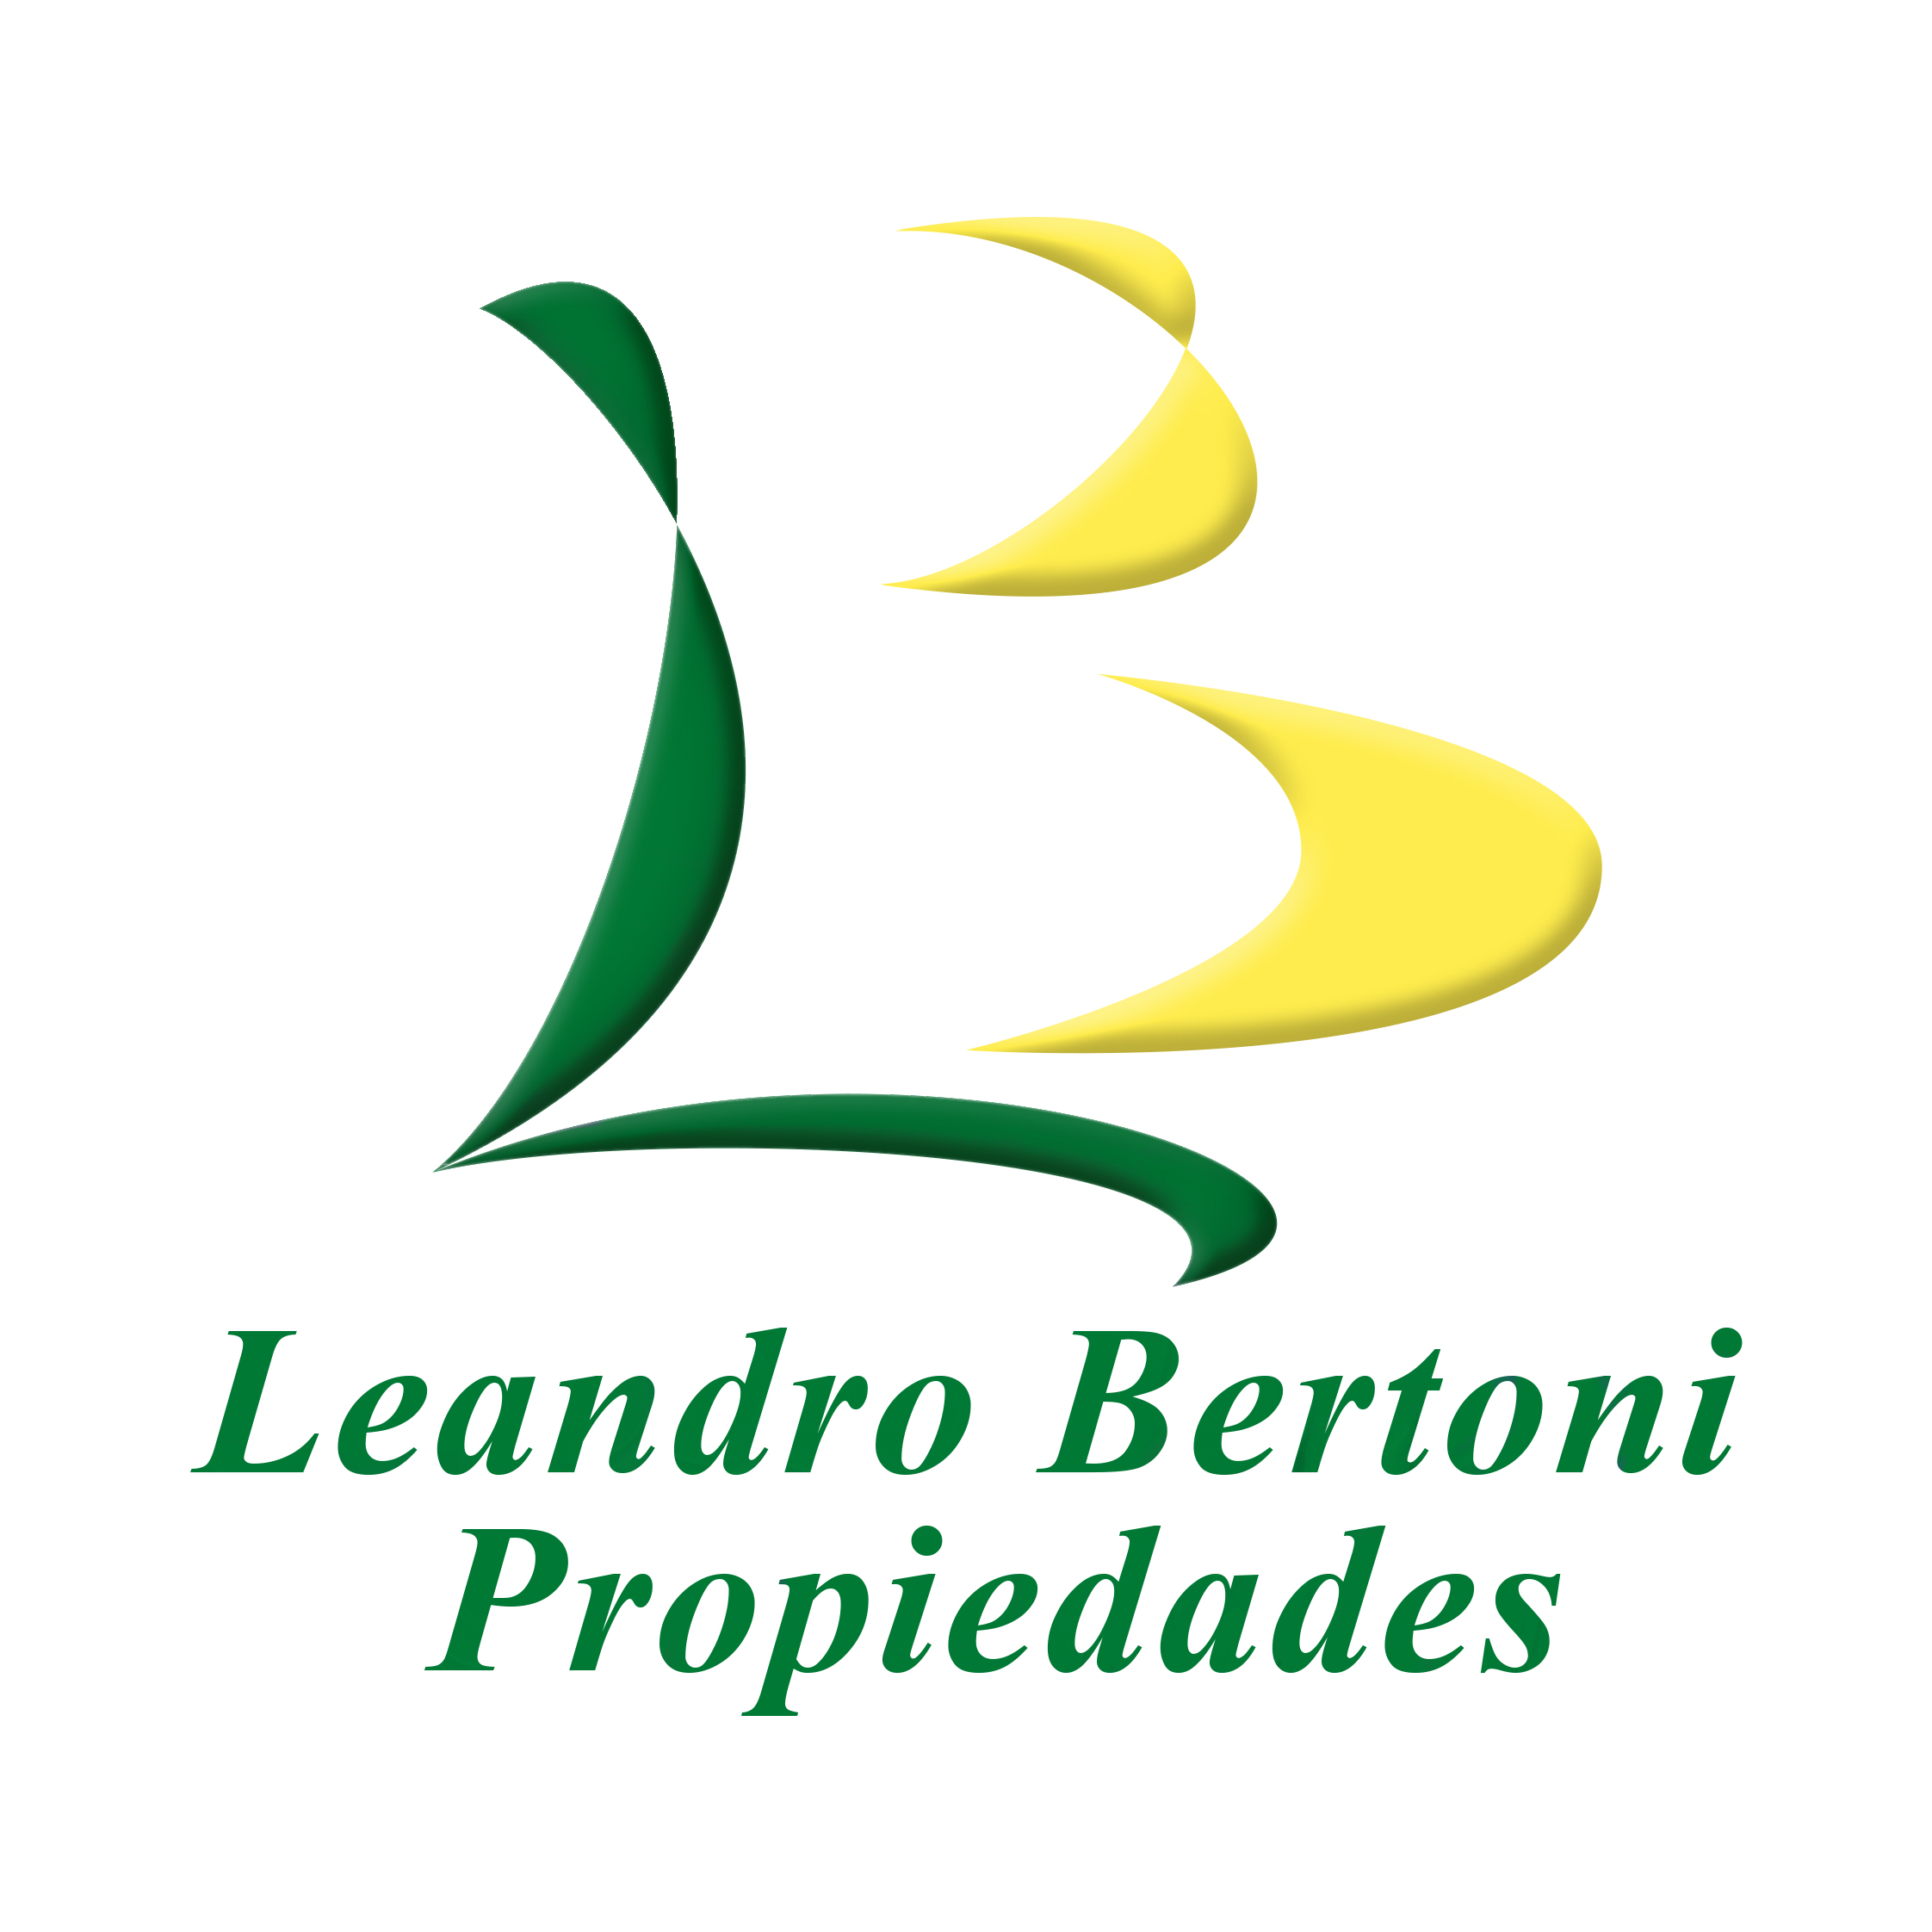 Leandro Bertoni Propiedades